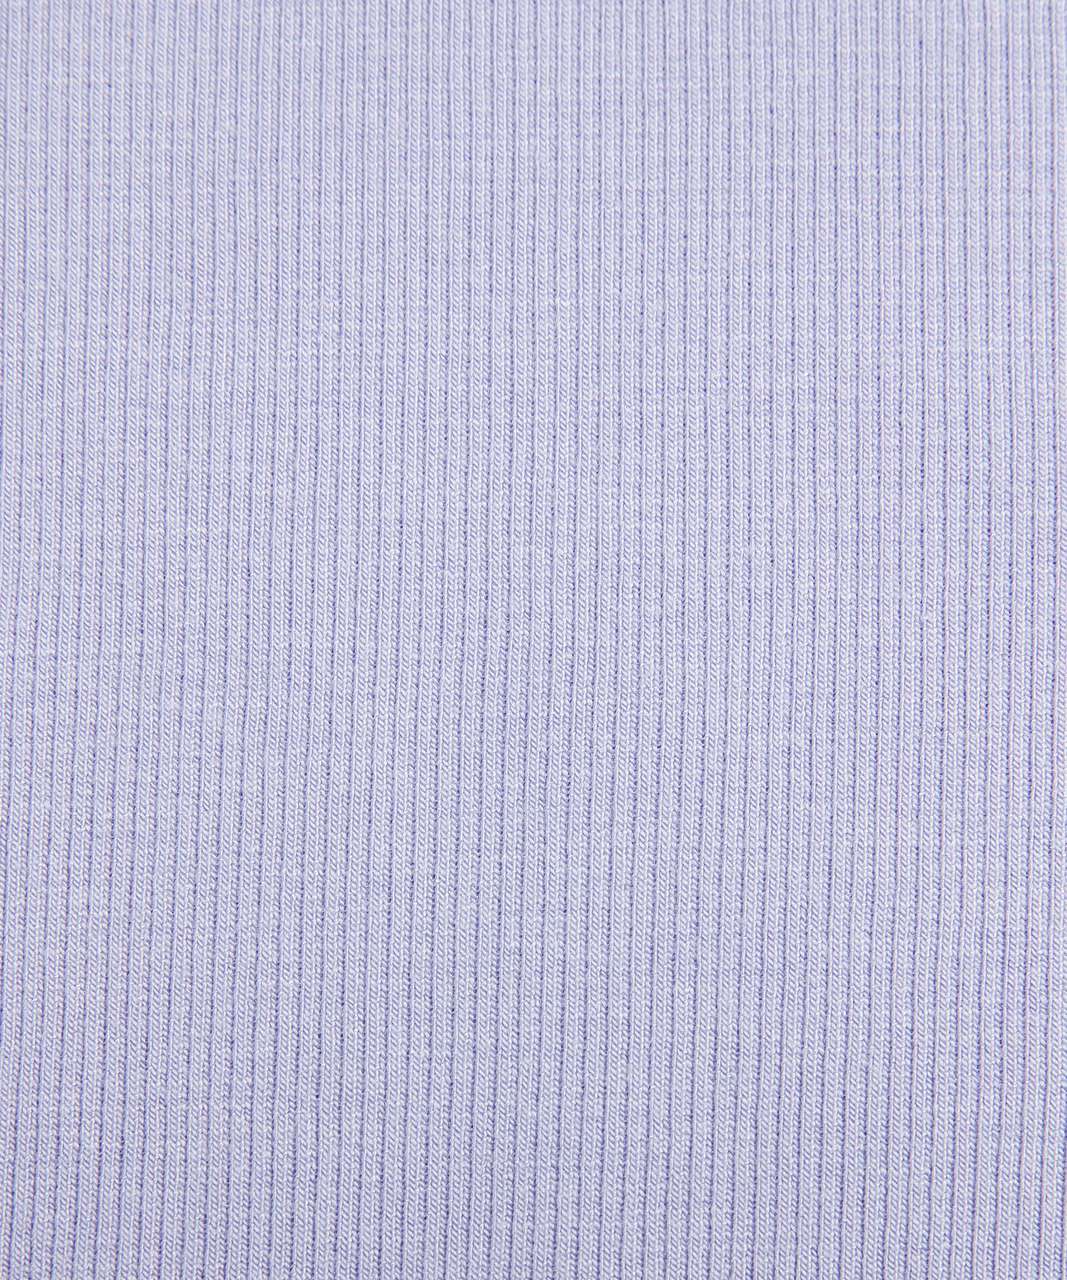 Lululemon Softstreme Gathered T-Shirt Magenta Purple Cropped Size 12